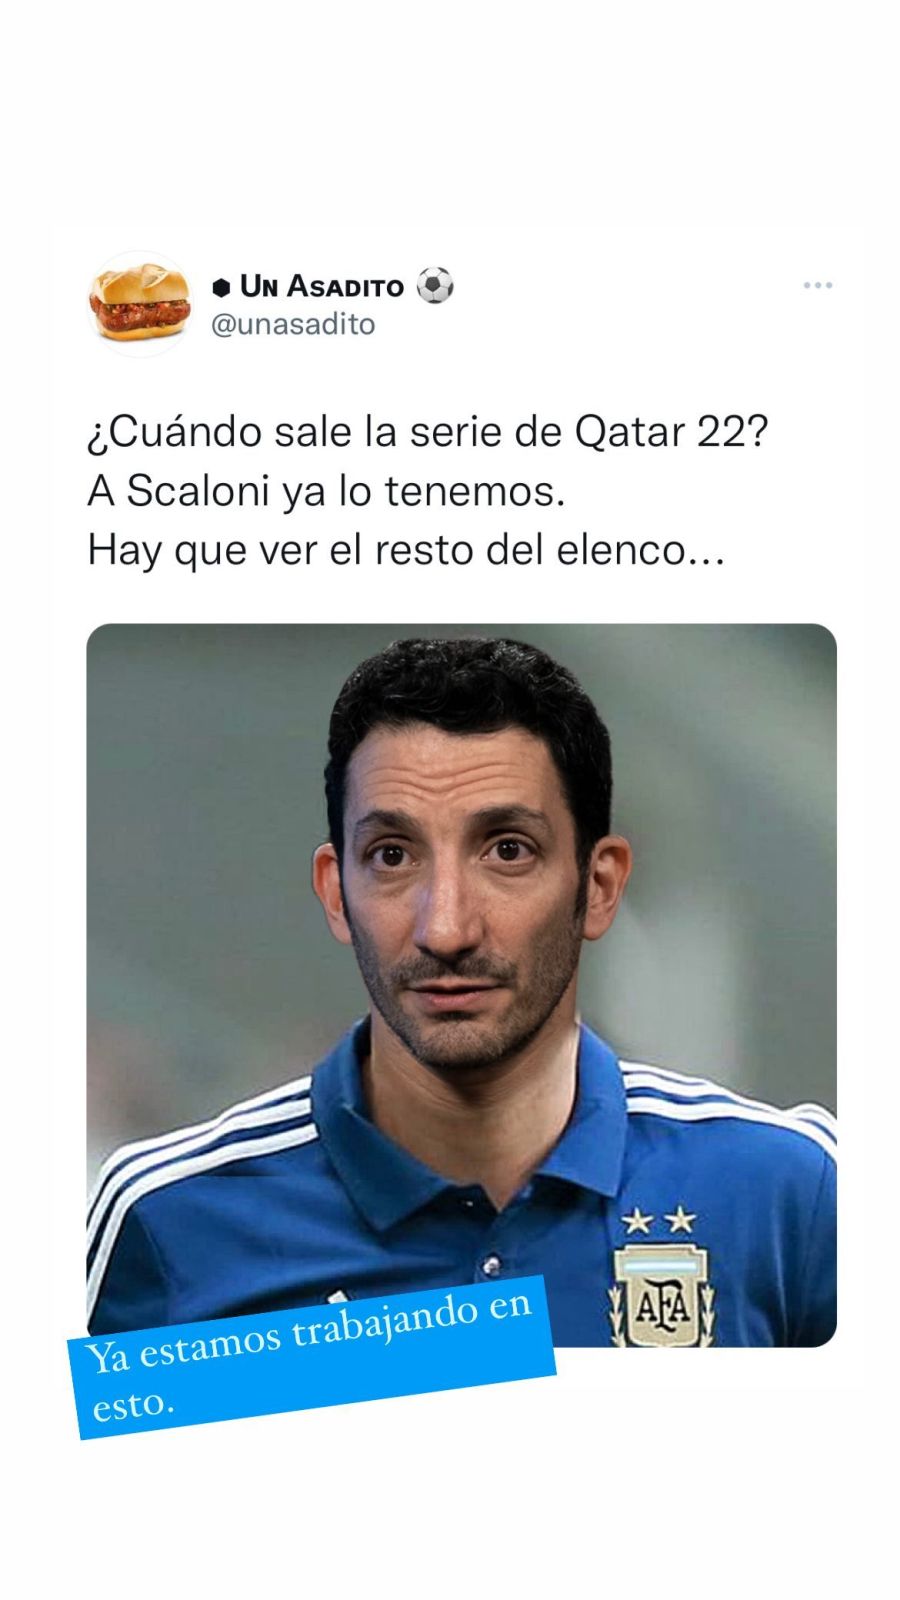 Juan Minujín jugó con la posibilidad de ser Lionel Scaloni en una serie sobre Qatar 2022